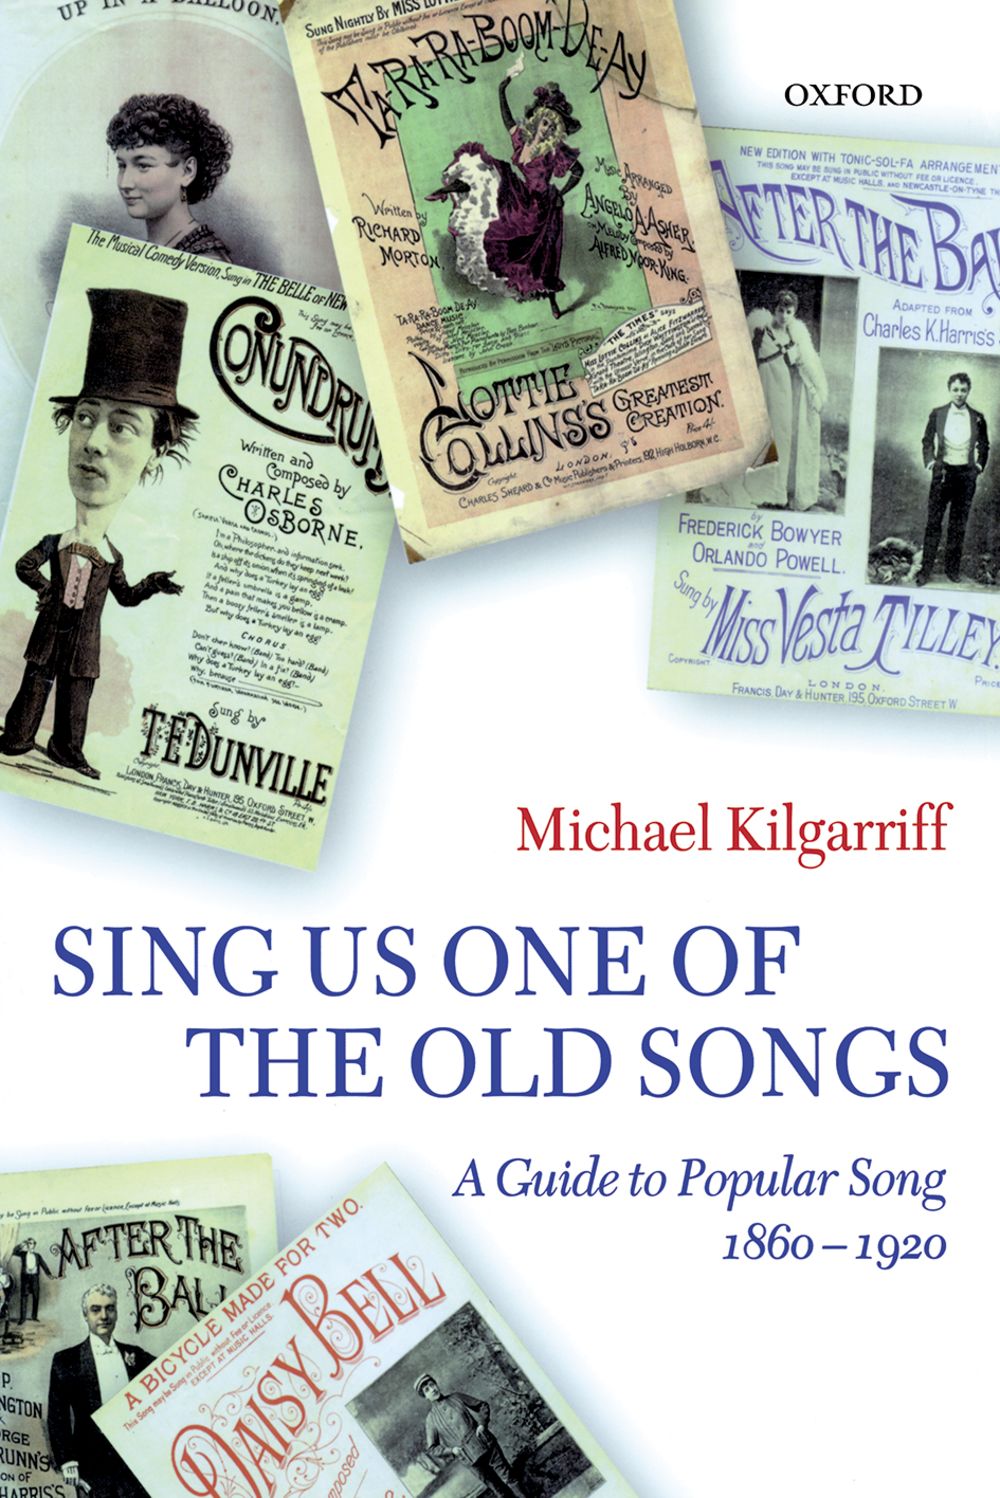 Kilgarriff Sing Us One Of The Old Songs Hardback Sheet Music Songbook